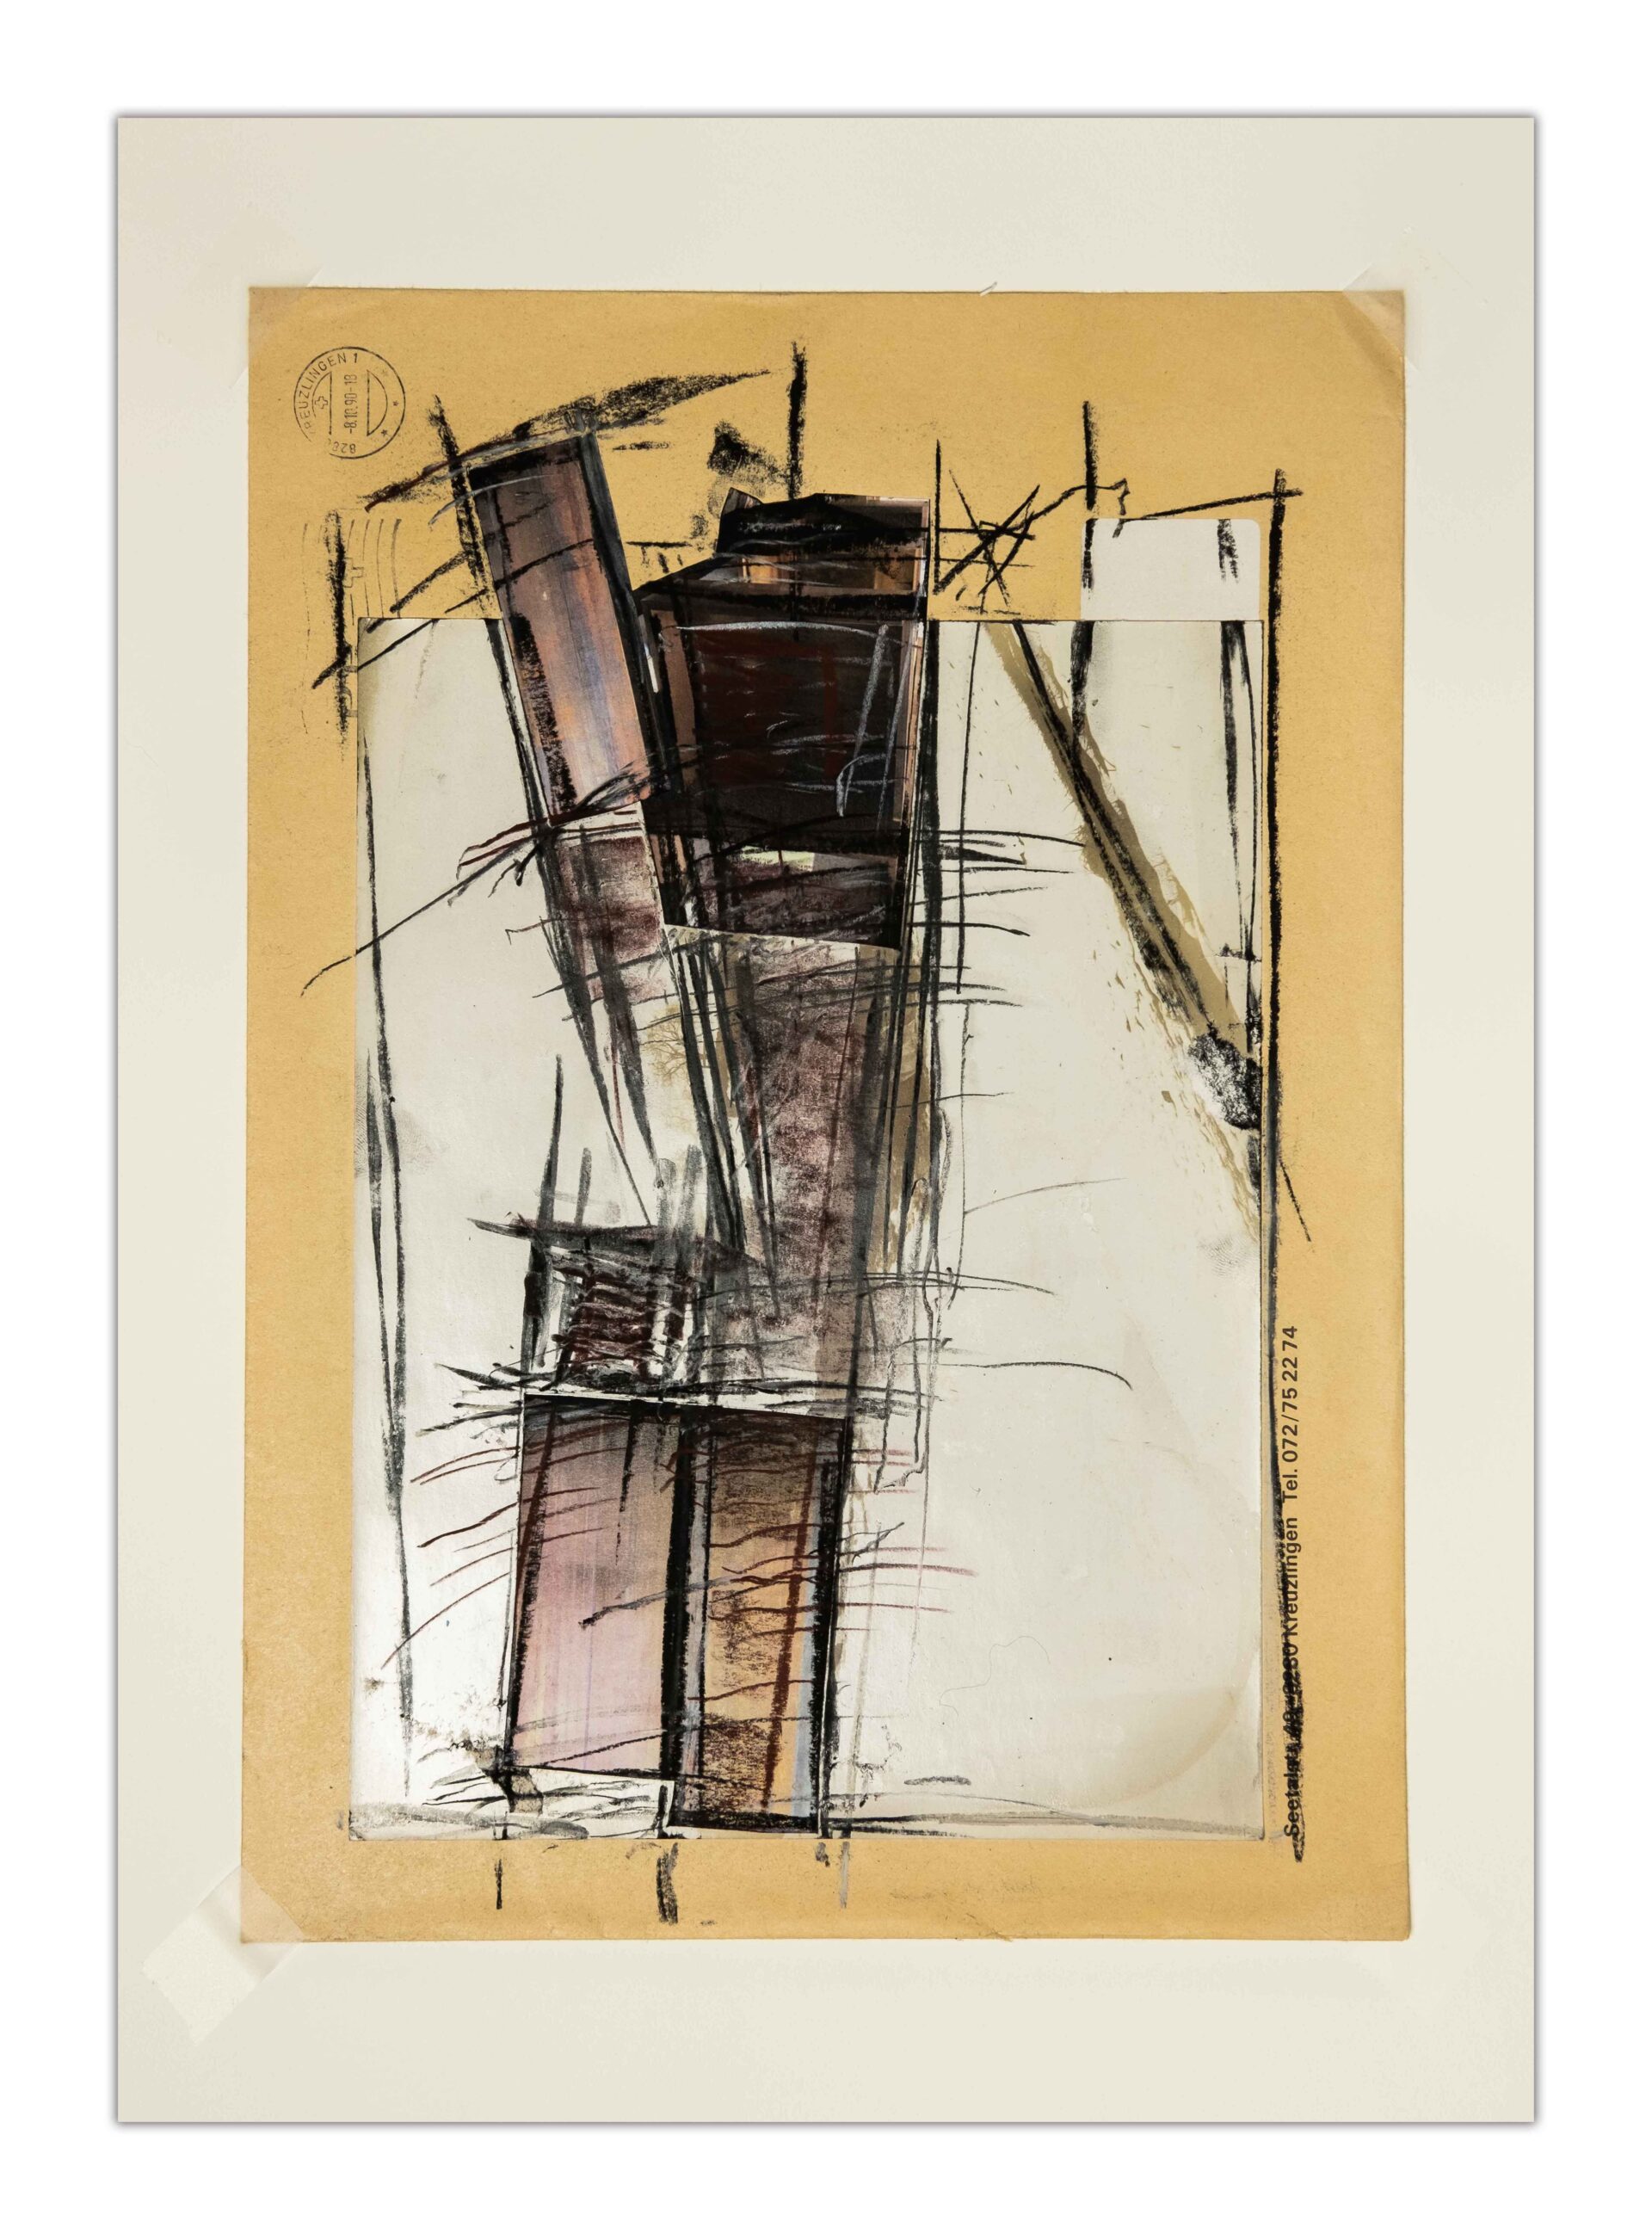 Boltshauser Architekten Mappe 6 Nr. 6 Collageskizze auf Couvert Roger Boltshauser 2015-2020